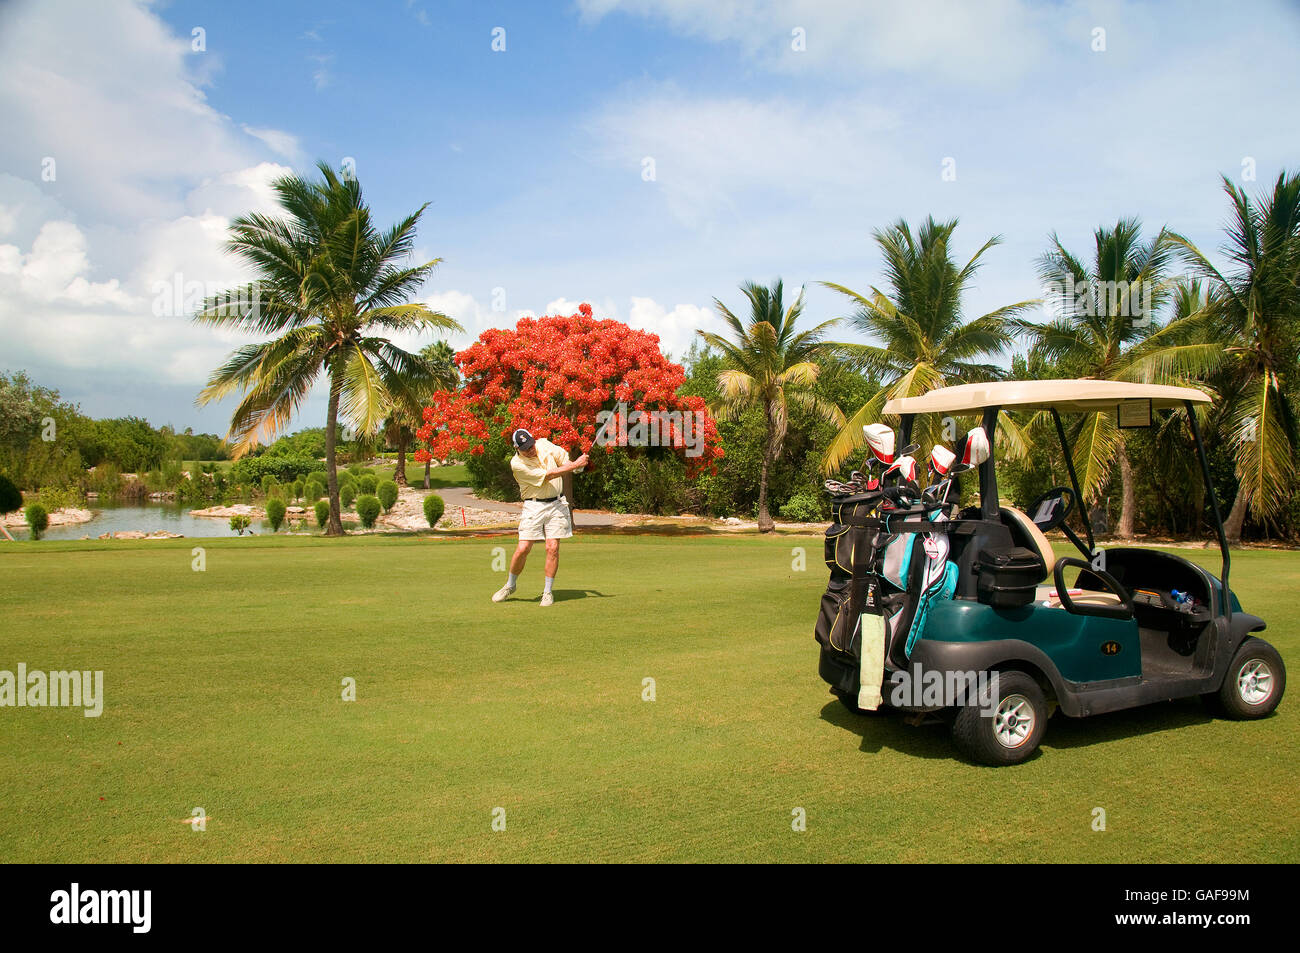 La magnifique île de Providenciales dans les îles Turks et Caicos offre un grand 18 trous Provo Golf Club bien sûr. Banque D'Images